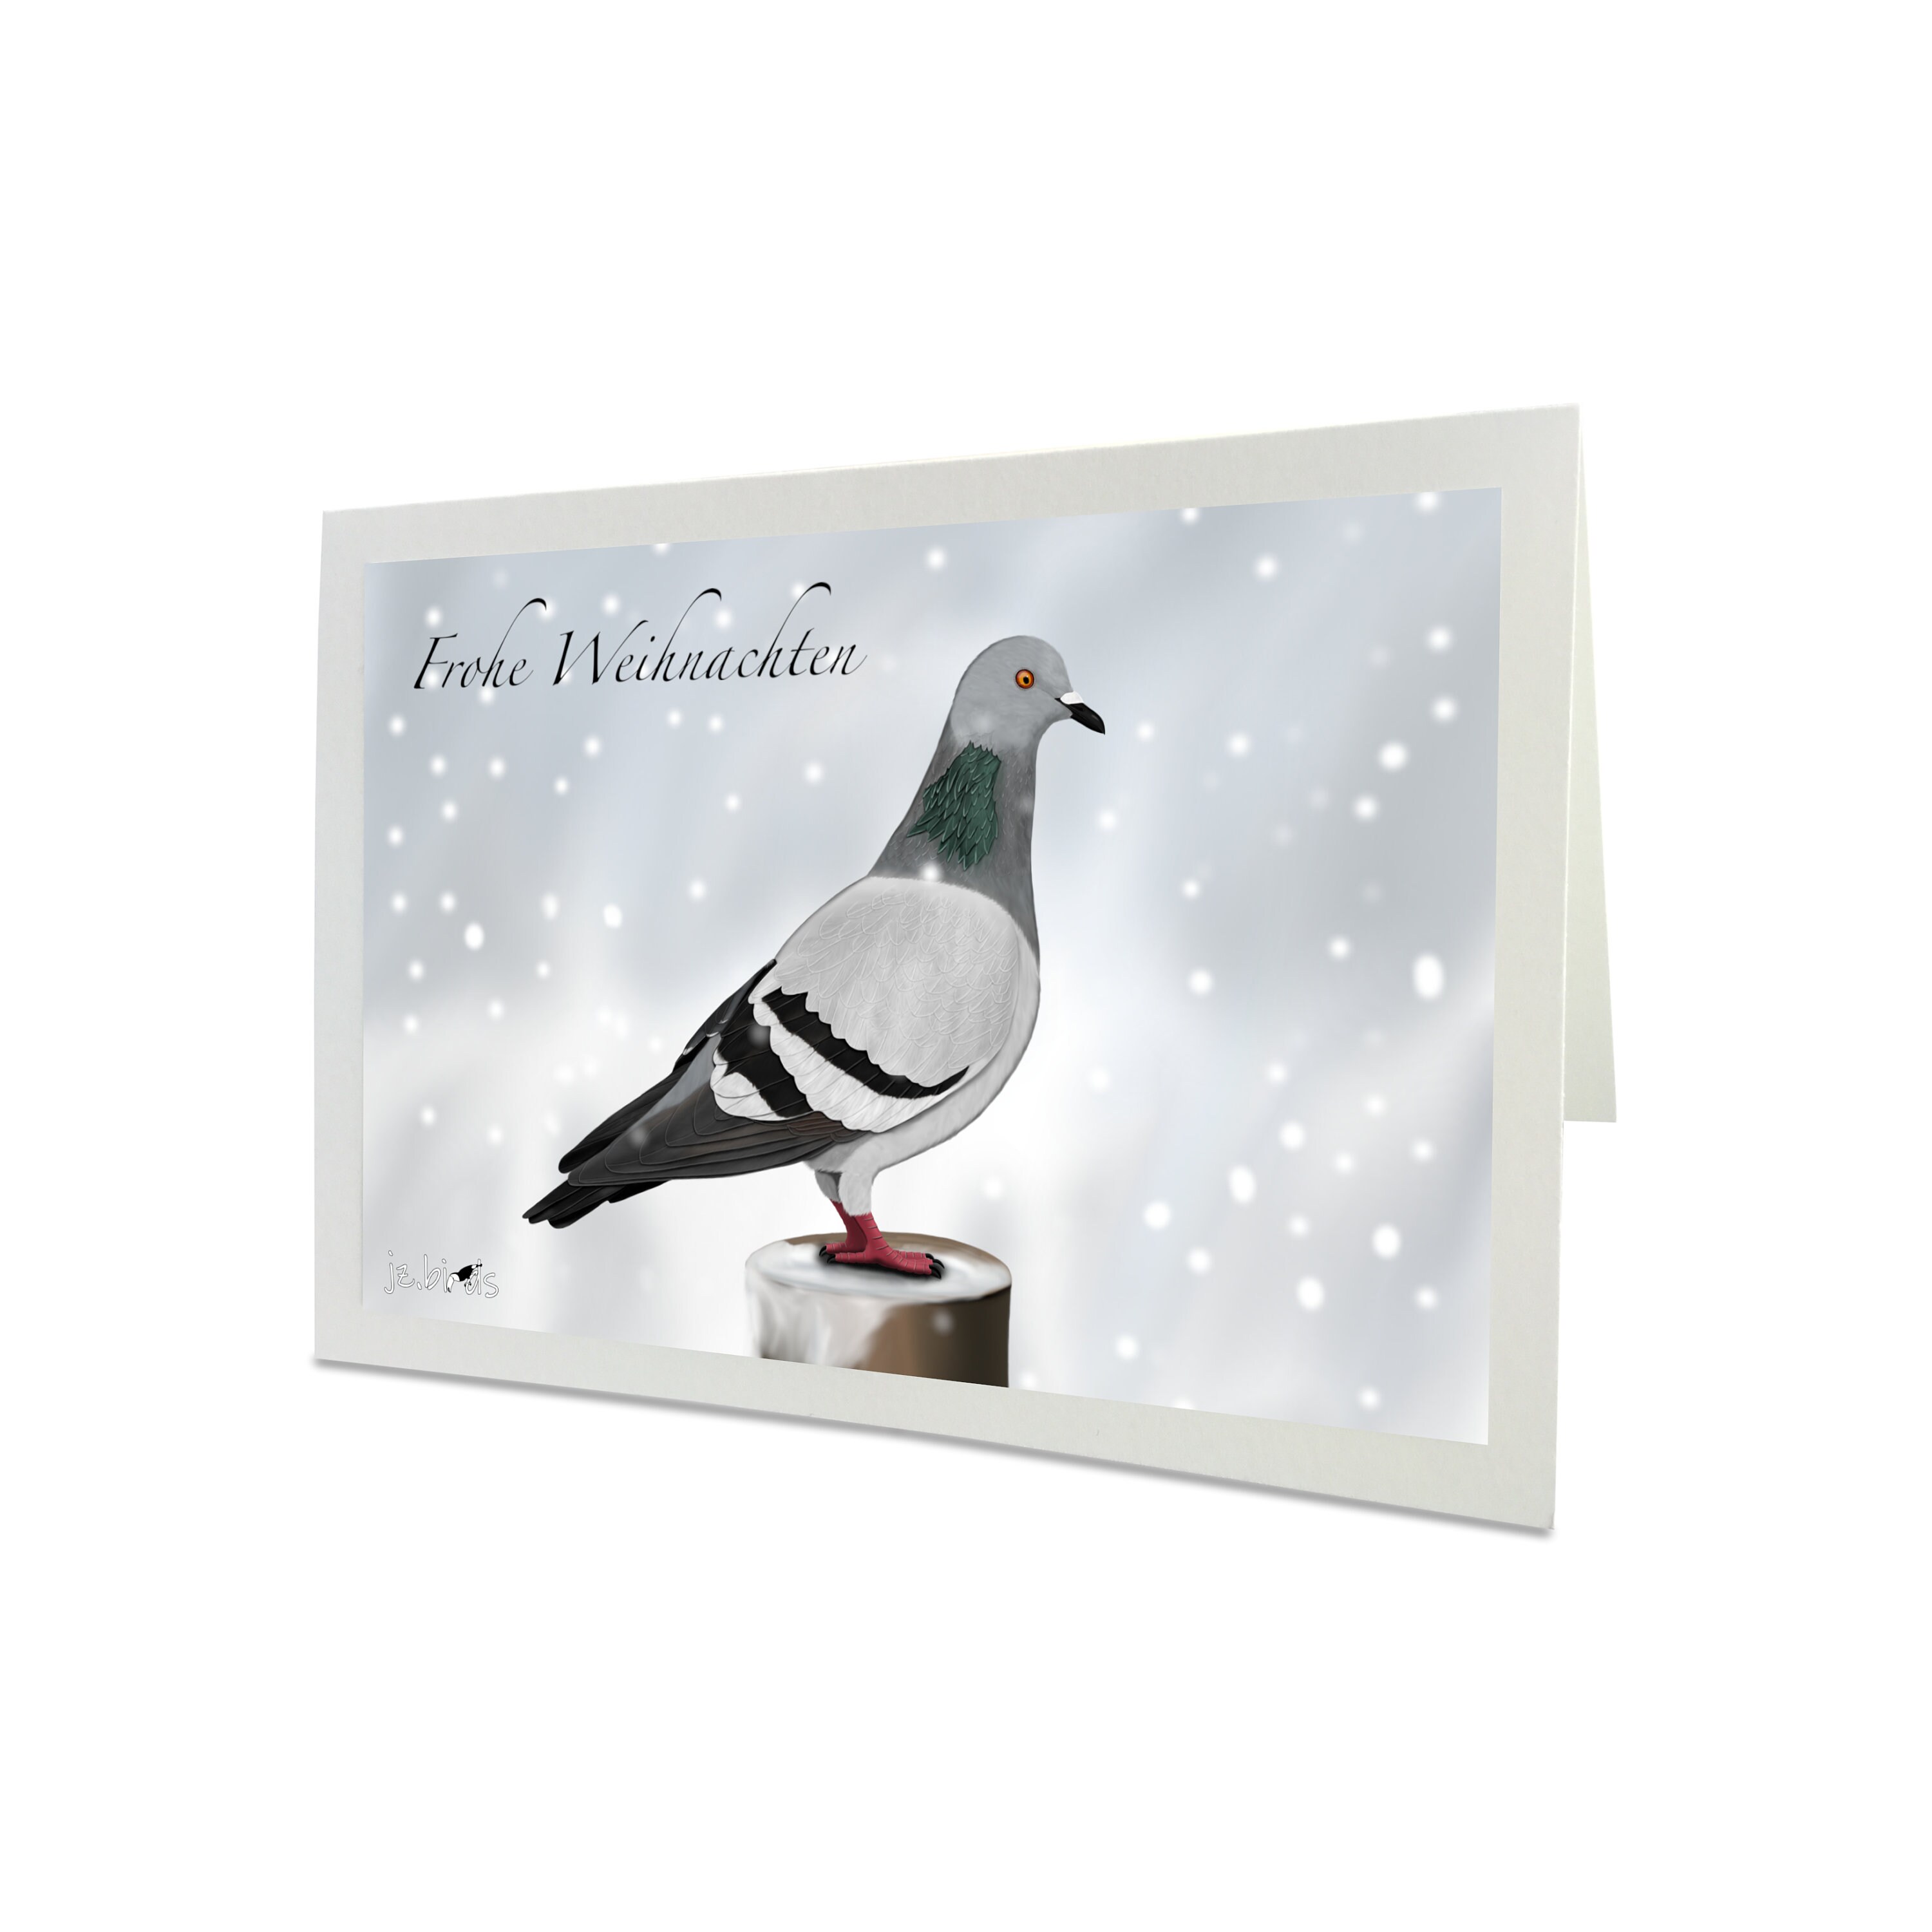 15 Weihnachtskarten mit Umschlag Set Grußkarten Weihnachten Taube